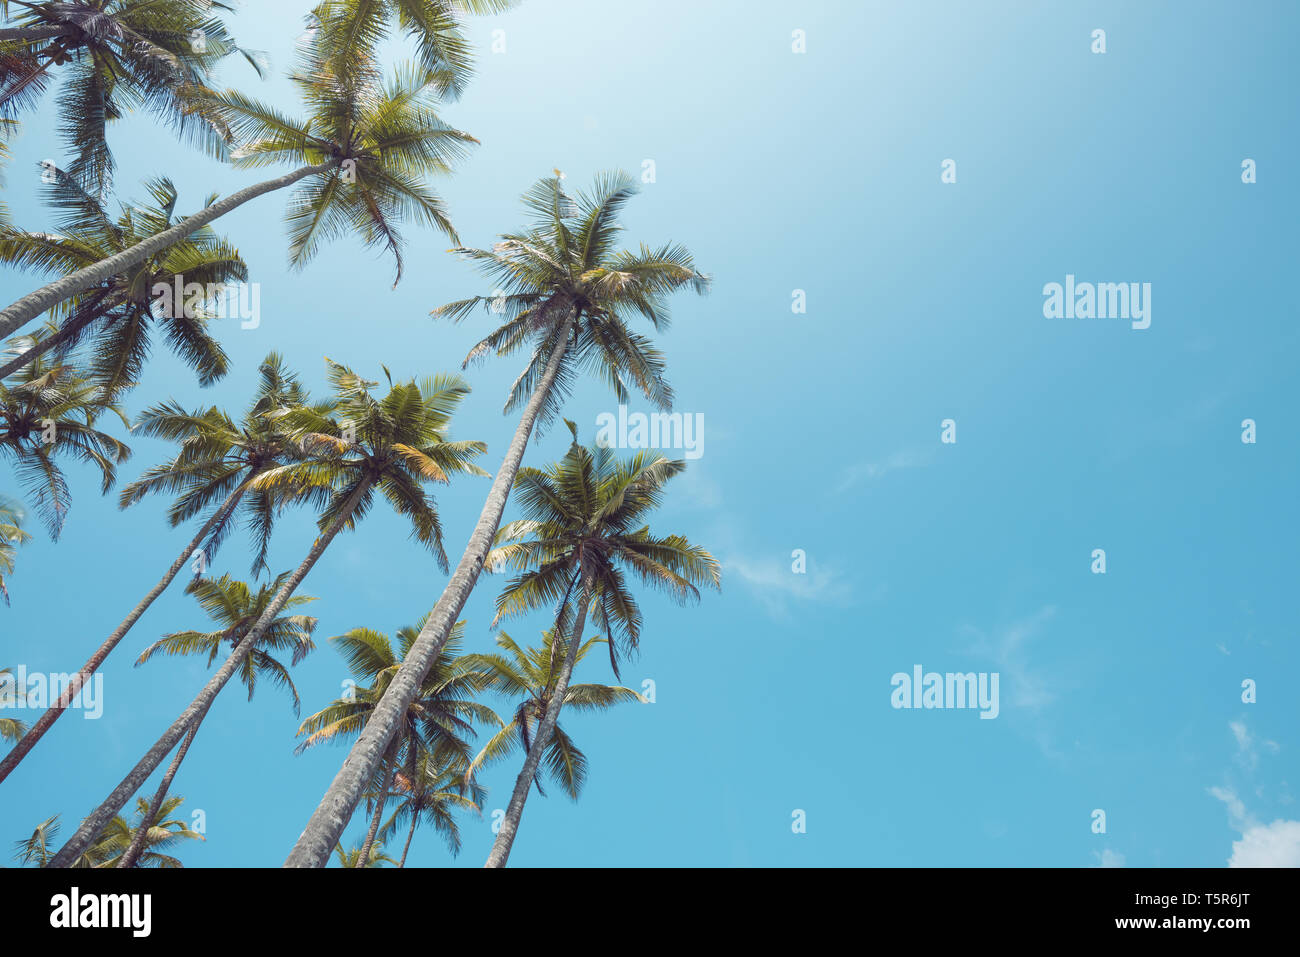 Palmiers sur la plage avec un ciel clair aux tons vintage Banque D'Images